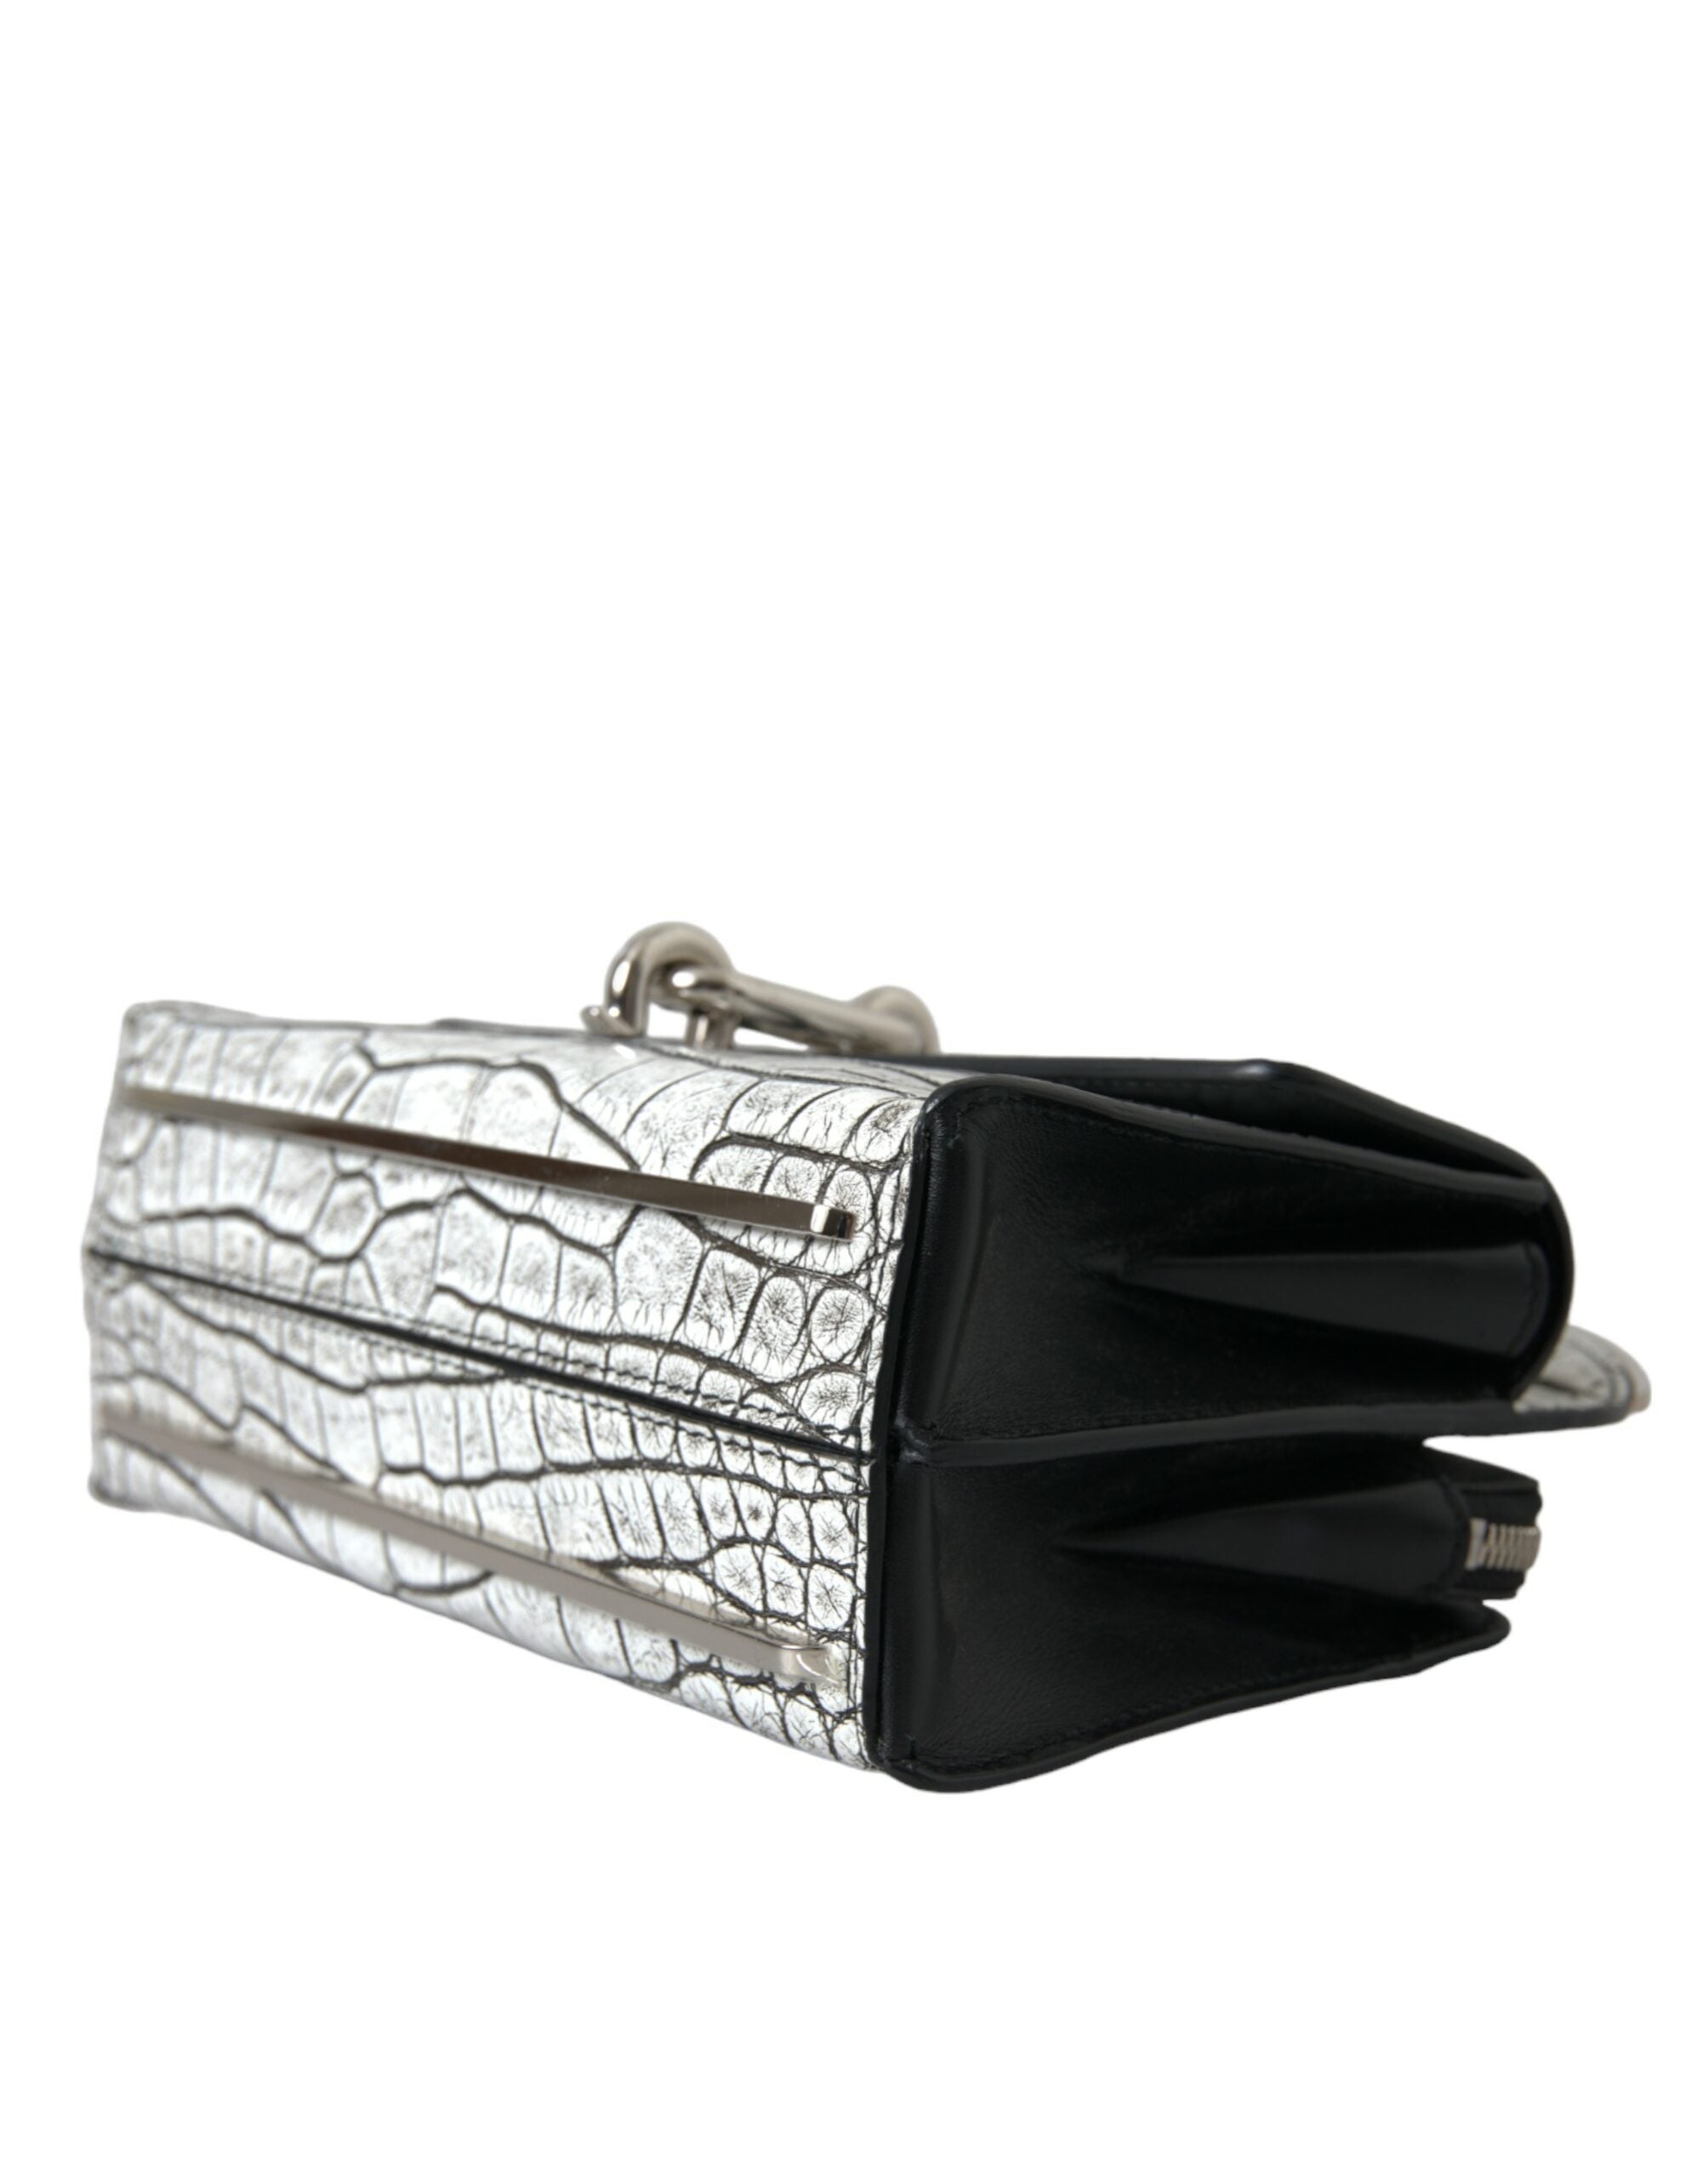 Balenciaga – Minitasche aus Alligatorleder in Metallic-Silber